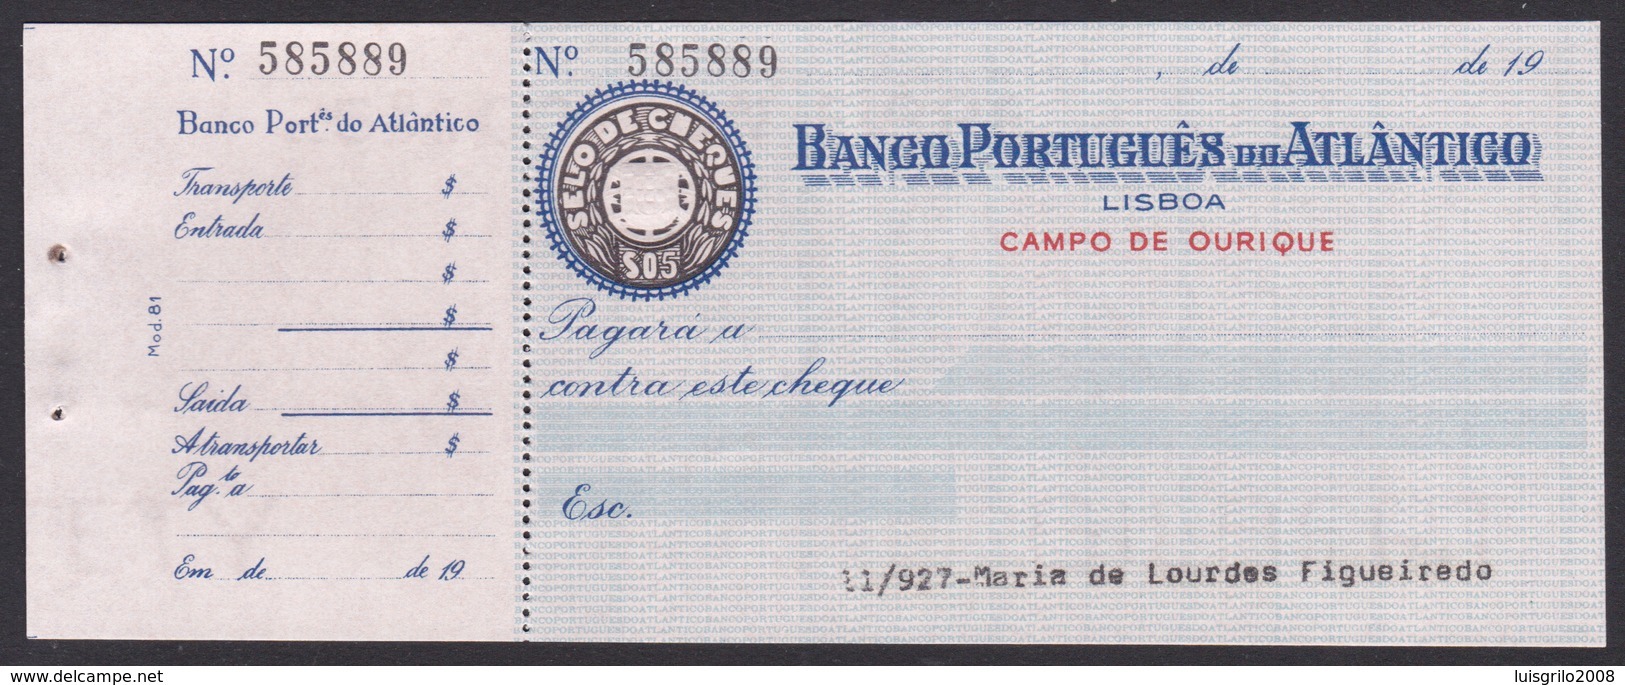 Bank Check/ Chèque Bancaire - BANCO PORTUGUÊS DO ATLÂNTICO - Lisboa, Portugal - Chèques & Chèques De Voyage